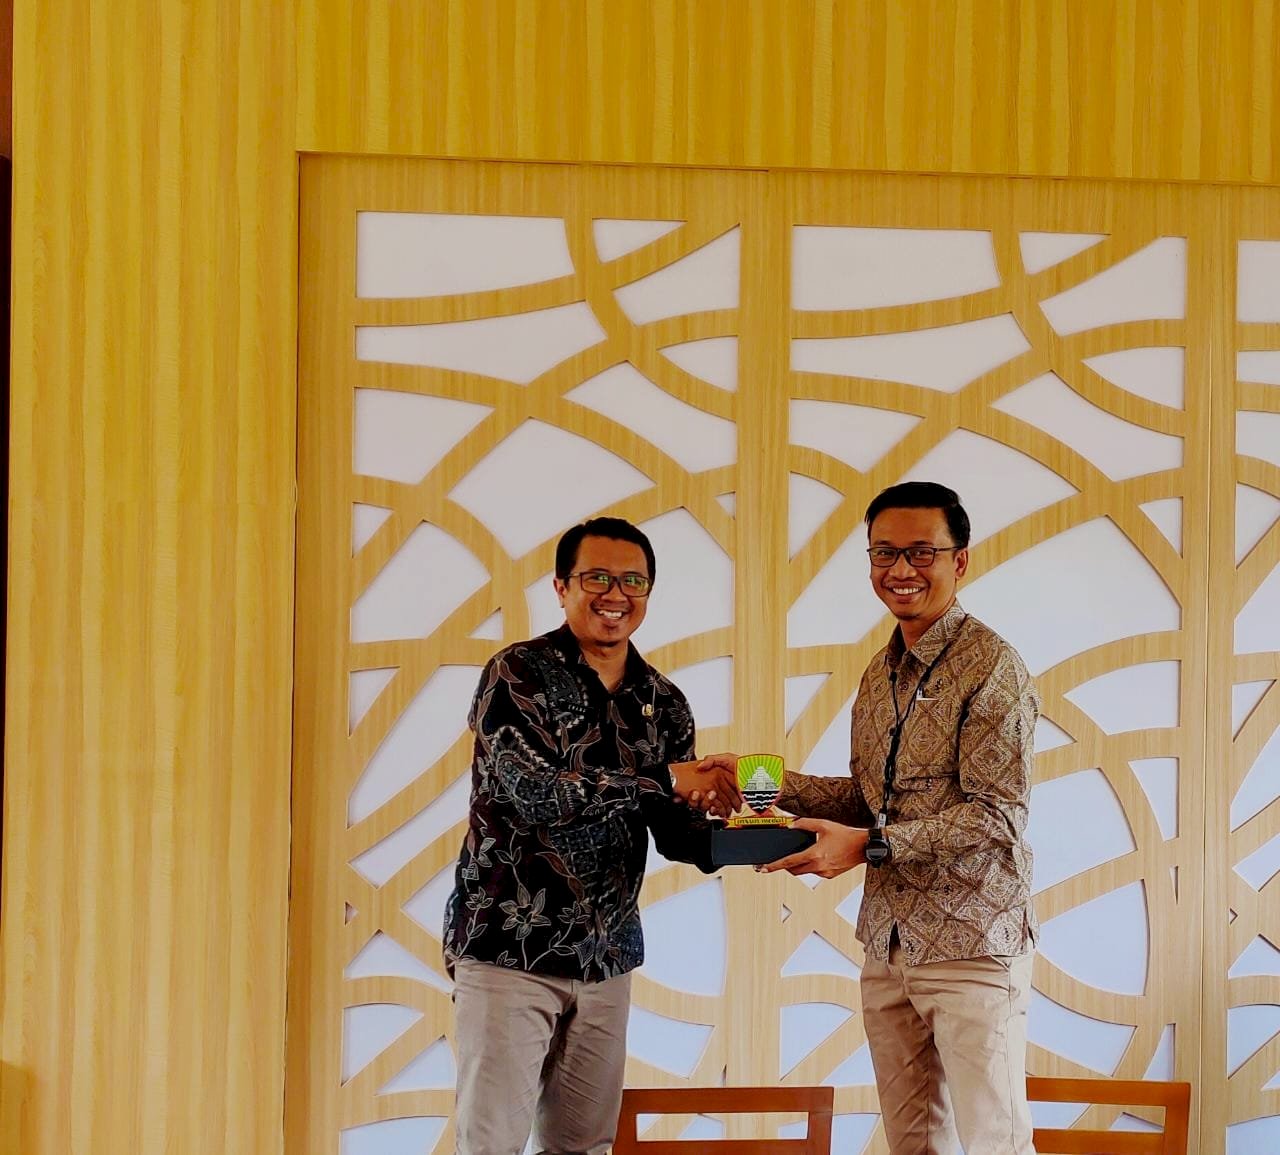 Tim Forum Satu Data Klaten Kunjungi Bappppeda Kabupaten Sumedang